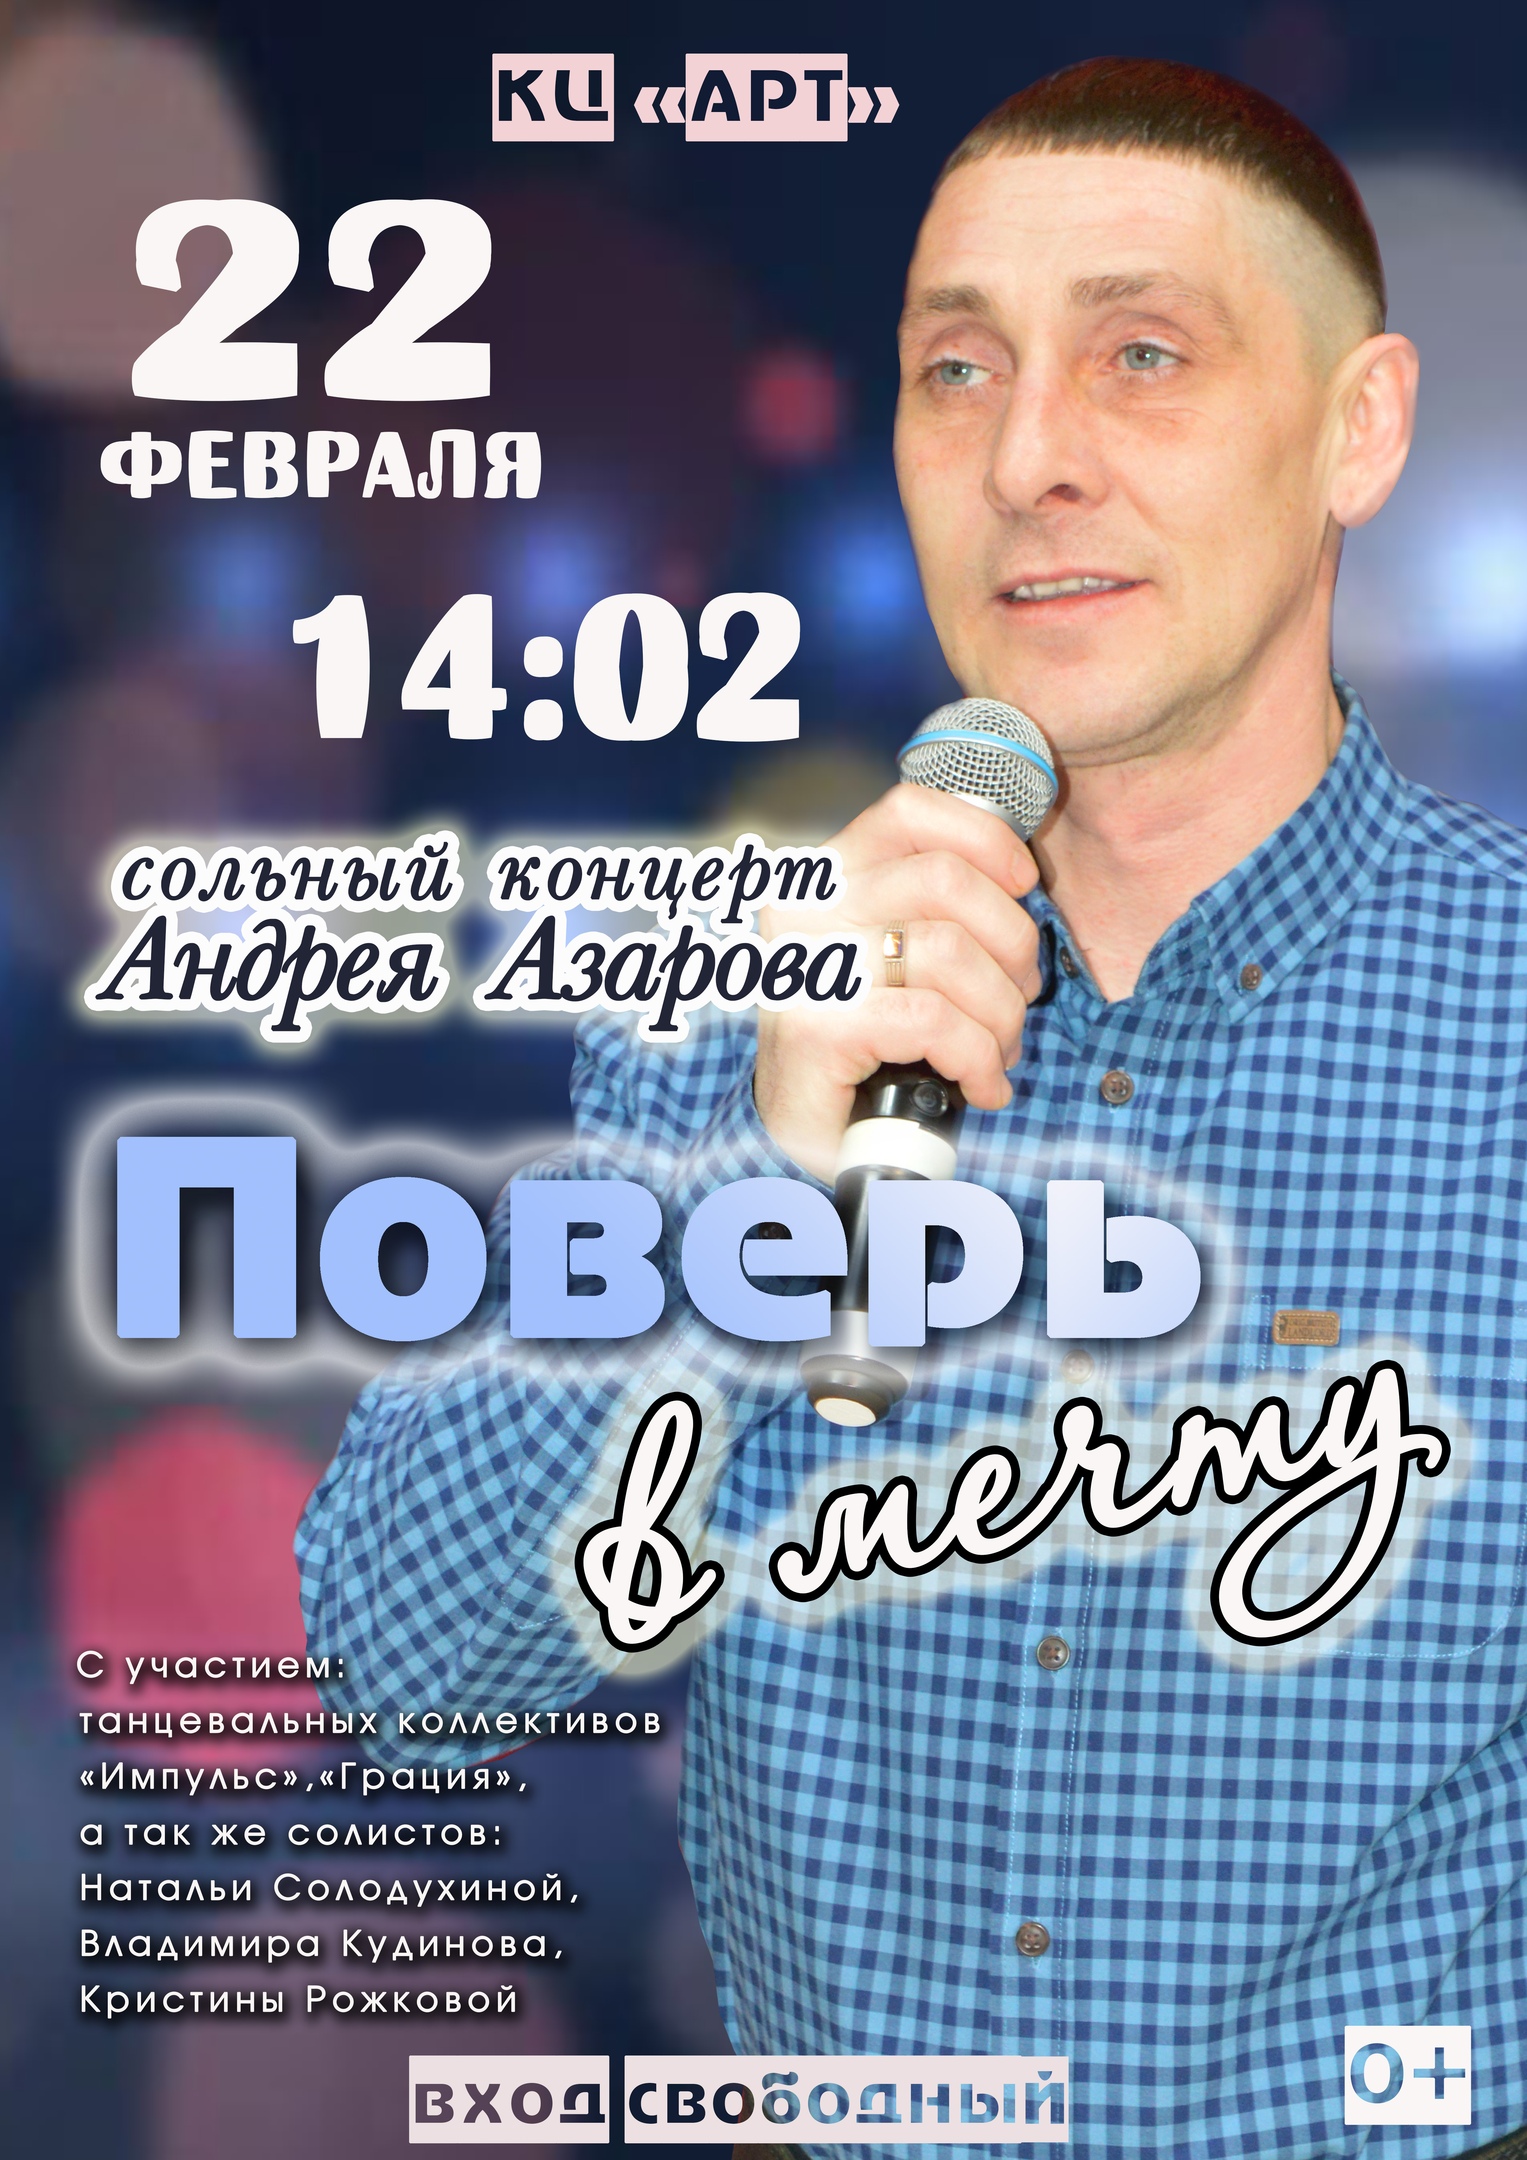 Сольный концерт Андрея Азарова